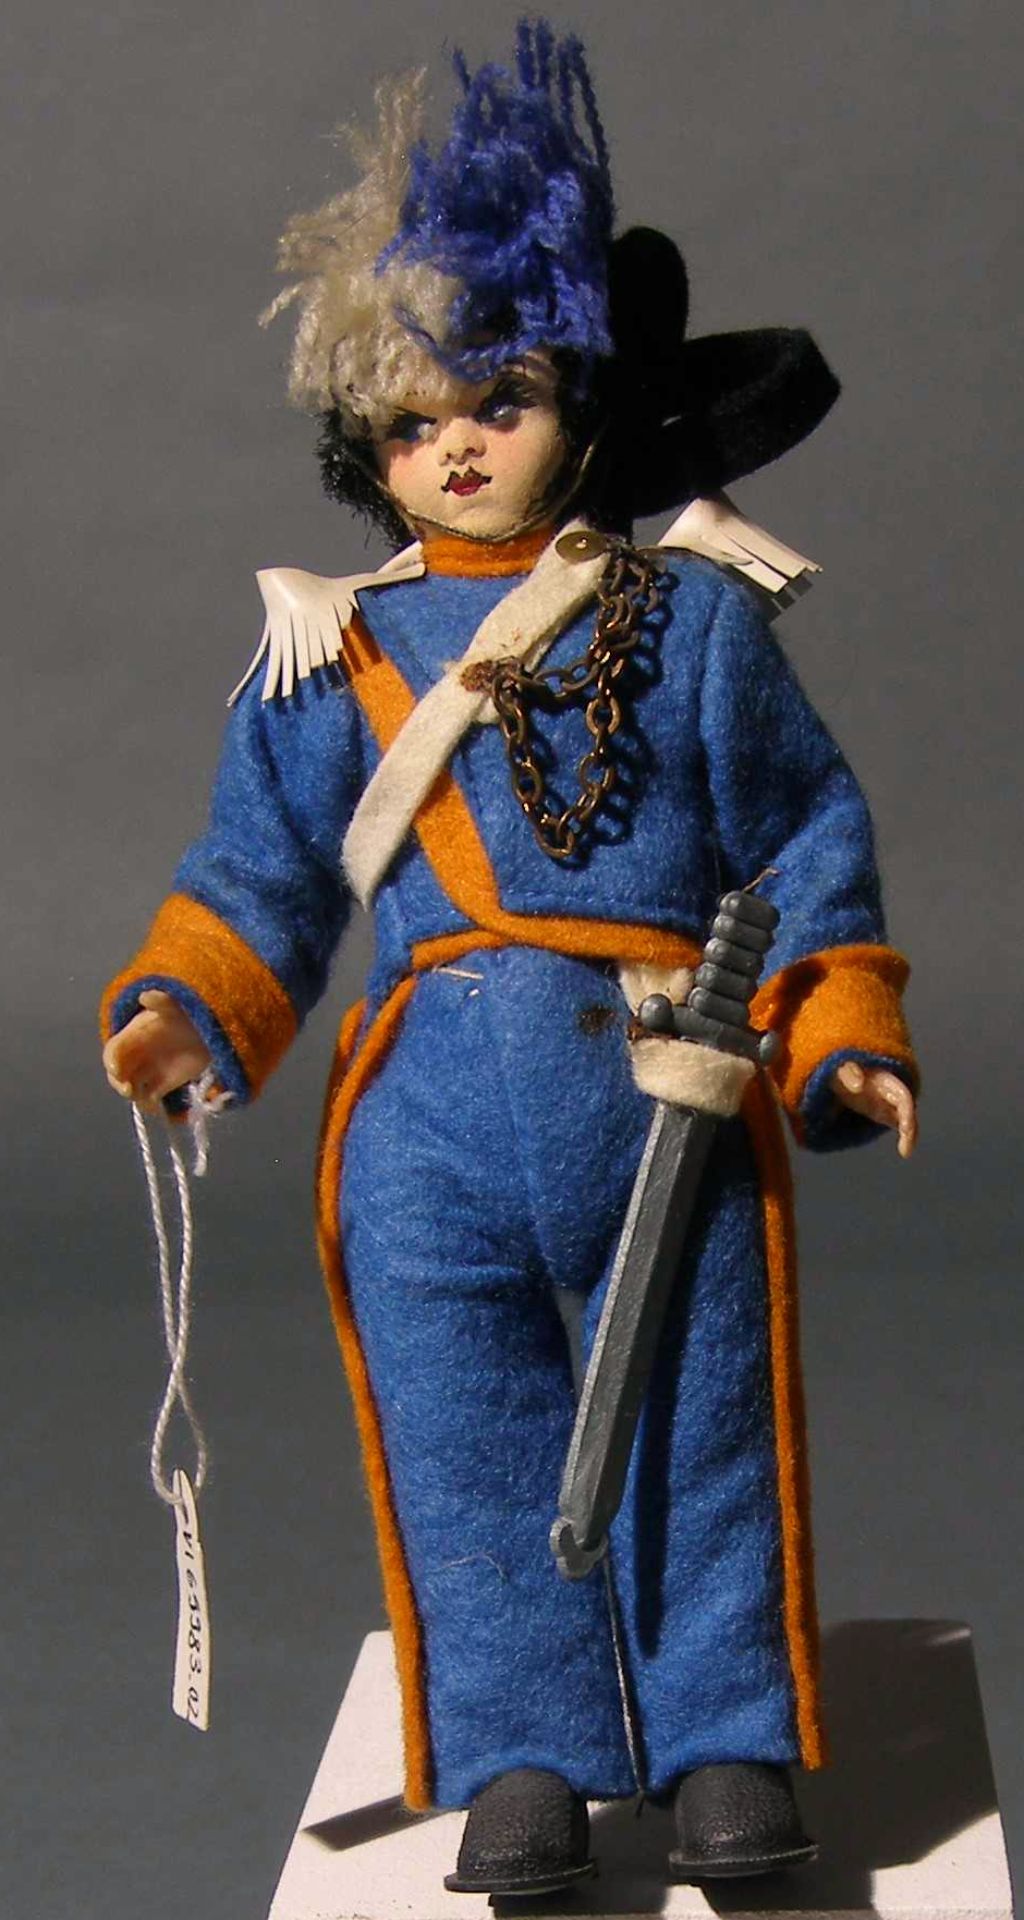 Das Foto zeigt eine Puppe, die eine Wache aus San Marino darstellt. Sie trägt ene blau-orange Uniform und einen Hut mit Fedebusch sowie ein Schwert.